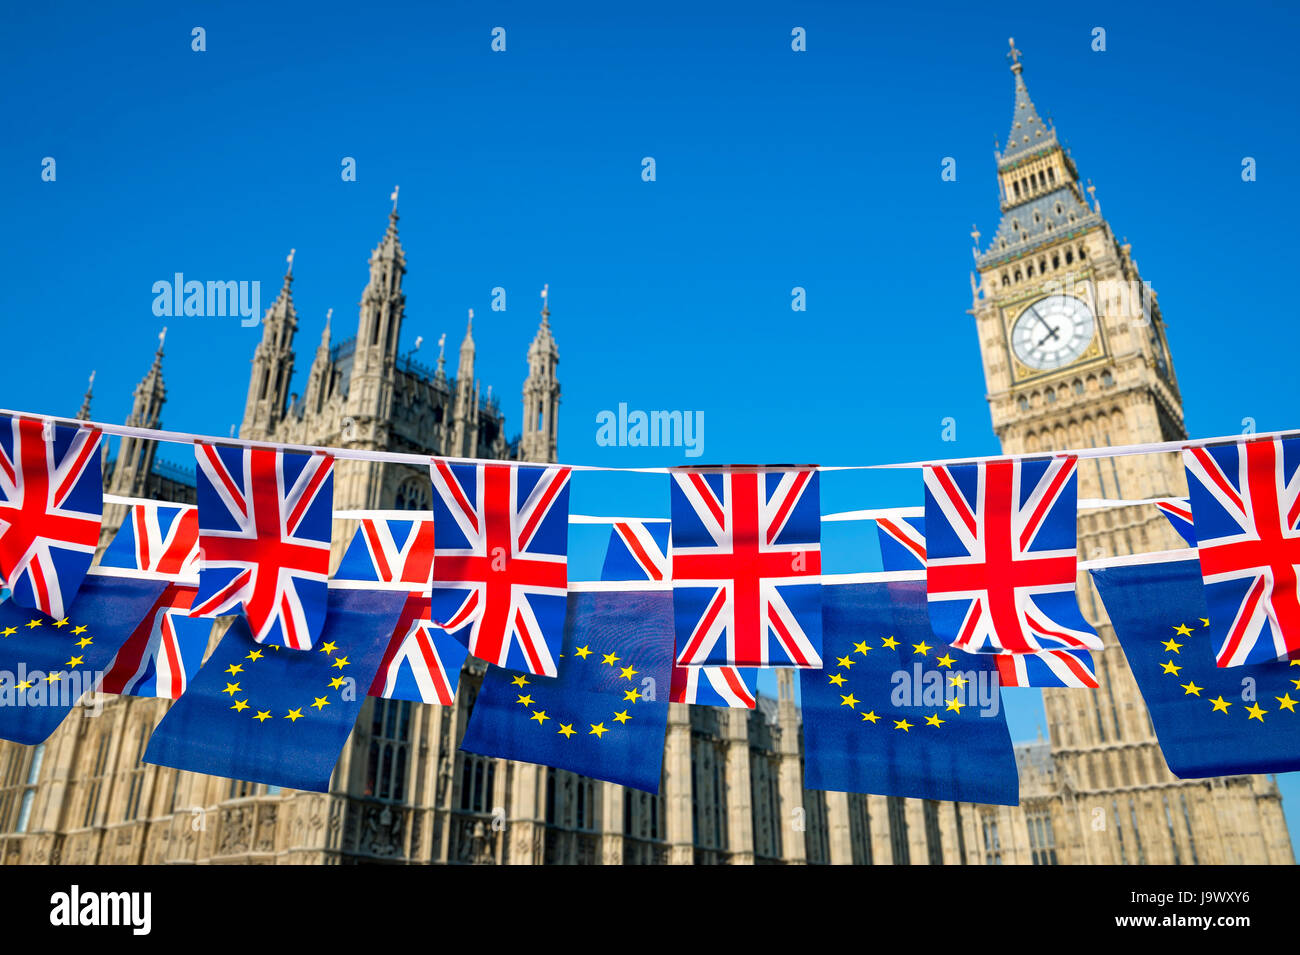 Vereinigten Königreich und der Europäischen Union flag Bunting fliegen zusammen in einem Geist der Zusammenarbeit der Austritt auf die Houses of Parliament, Westminster, London Stockfoto